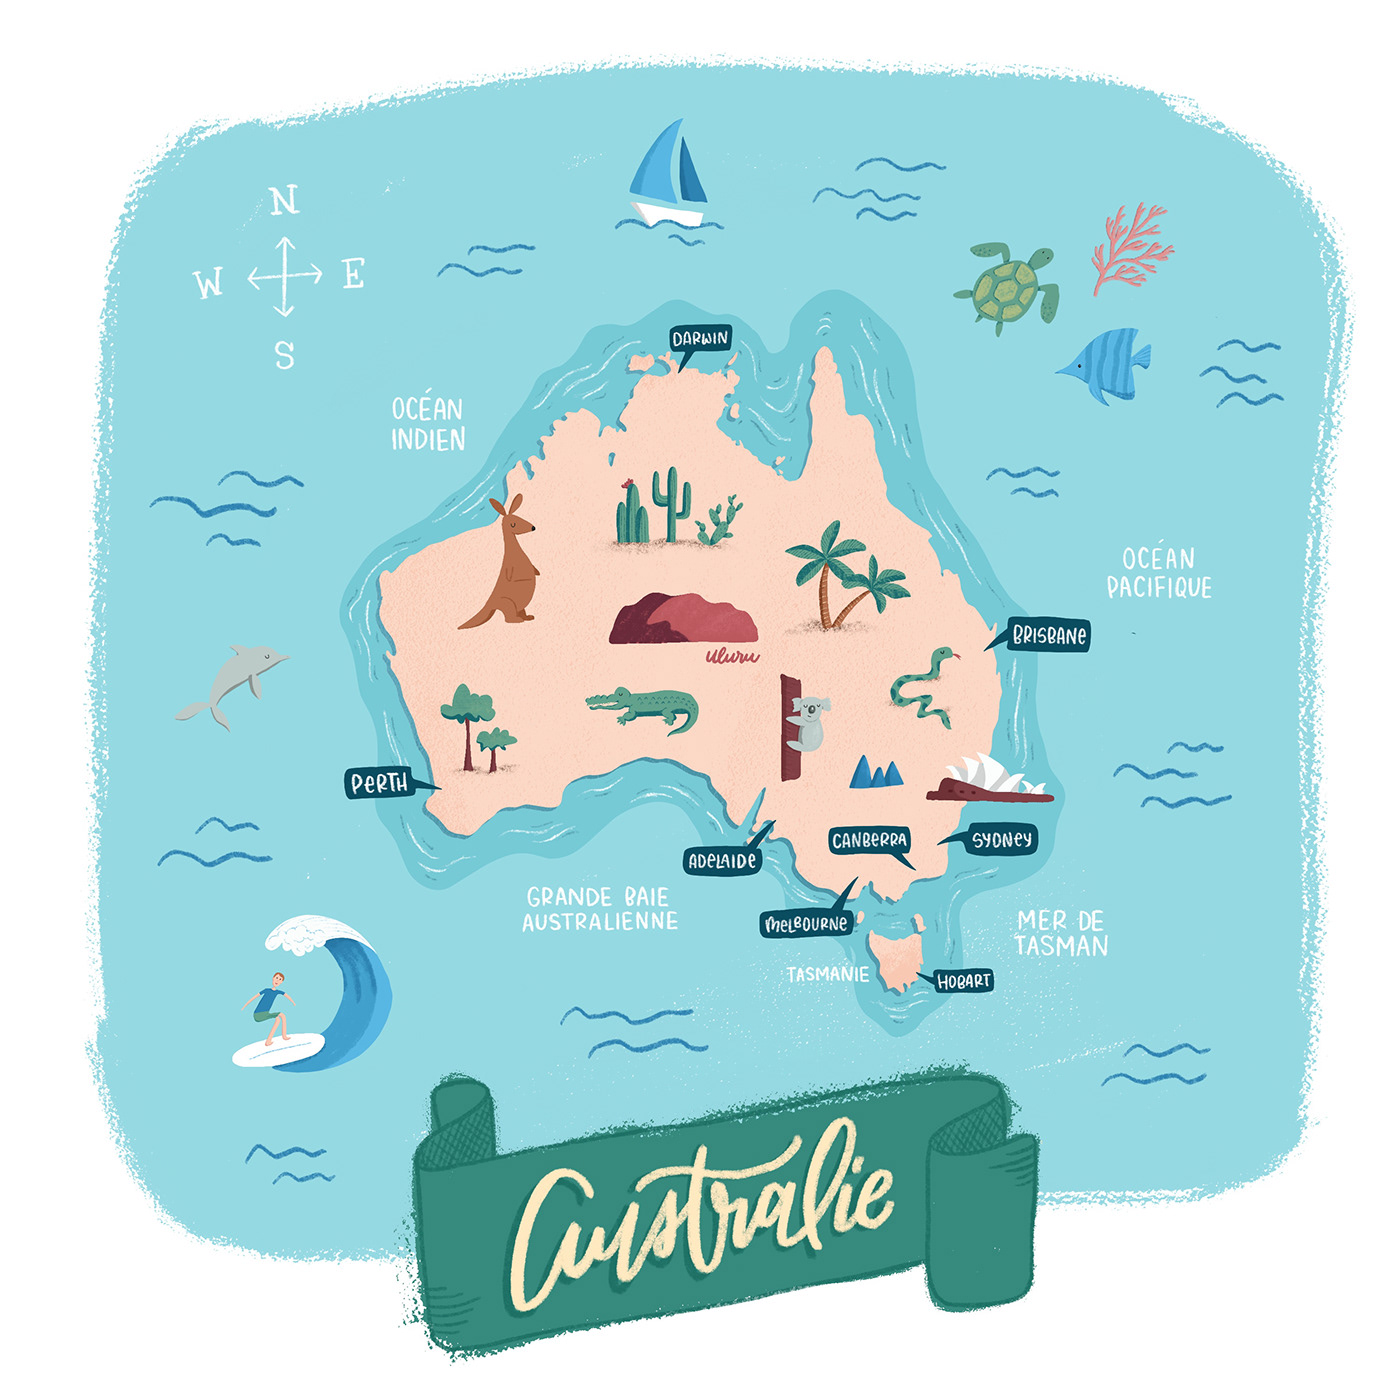 animals australia map australie digital illustration digital painting Island procreate illustration Travel travel illustration